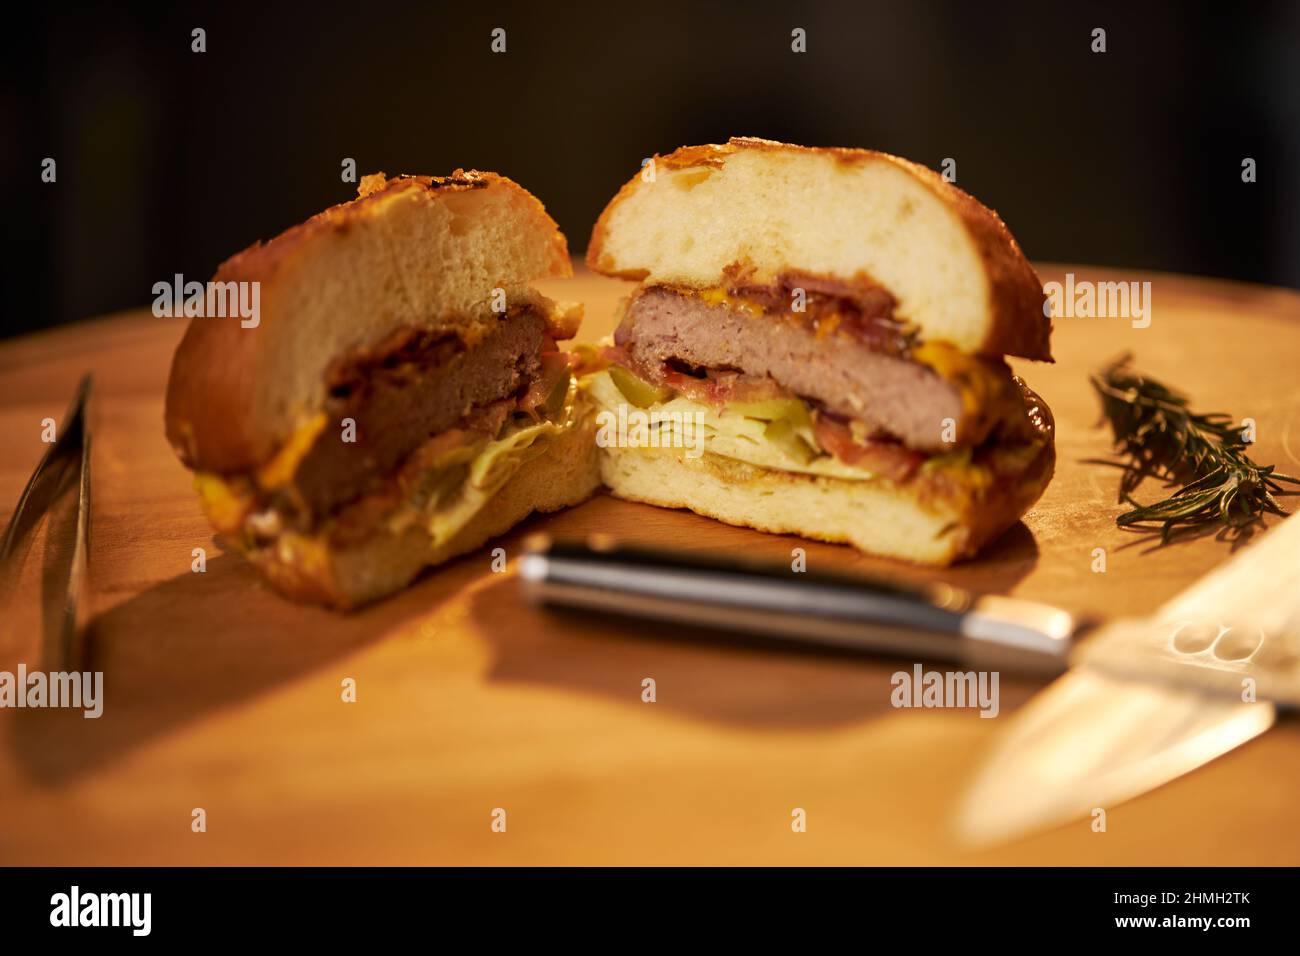 Vue rapprochée du hamburger de bœuf grillé coupé en deux avec des couteaux sur la planche à découper. Cheeseburger maison juteux avec salade, oignon et bâton de romarin sur bois. Concept de restauration rapide. Banque D'Images